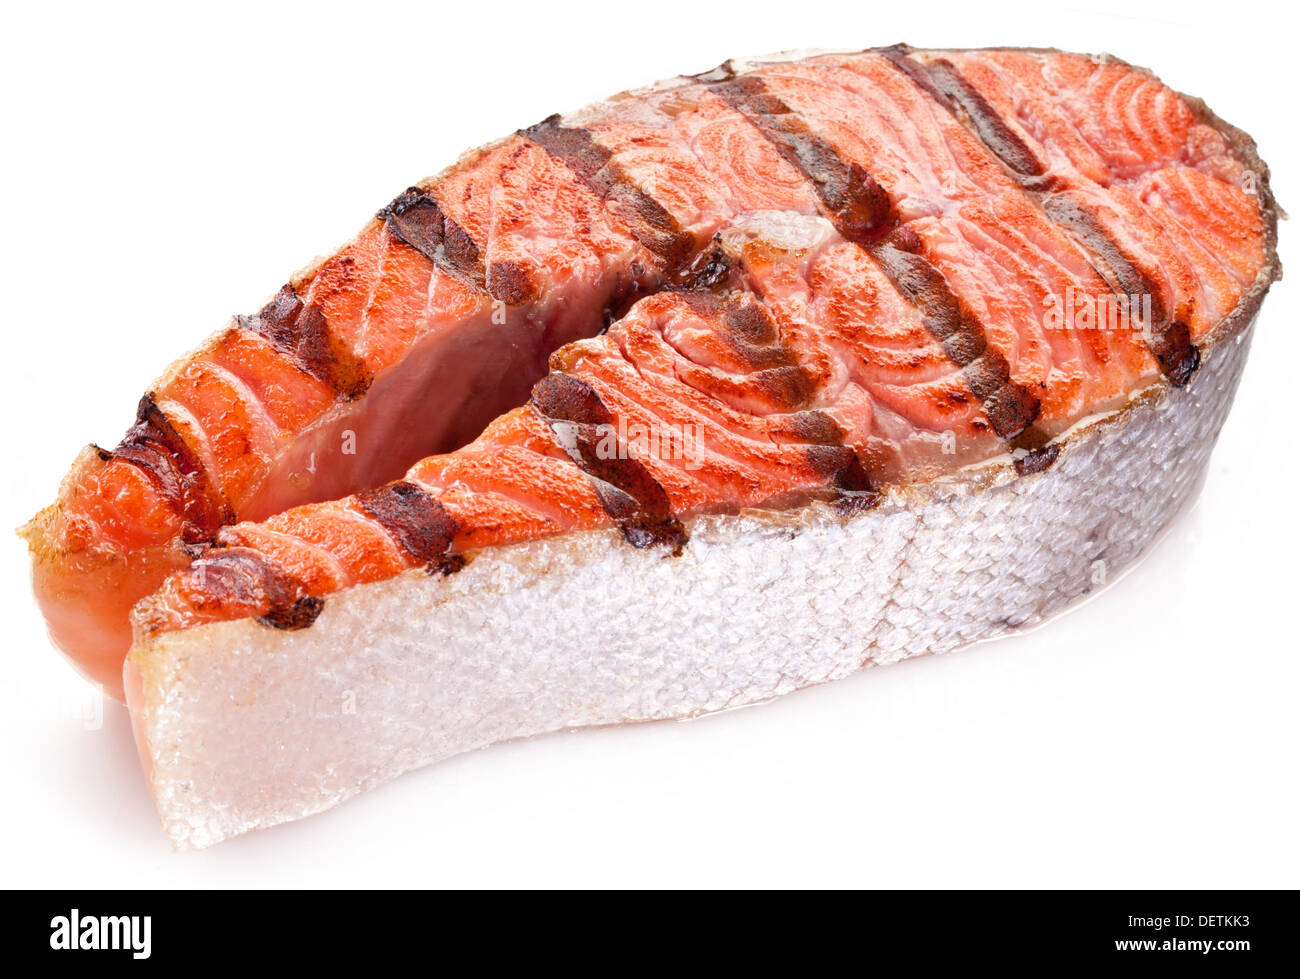 Grande bistecca di salmone alla griglia. Immagine ravvicinata. Foto Stock